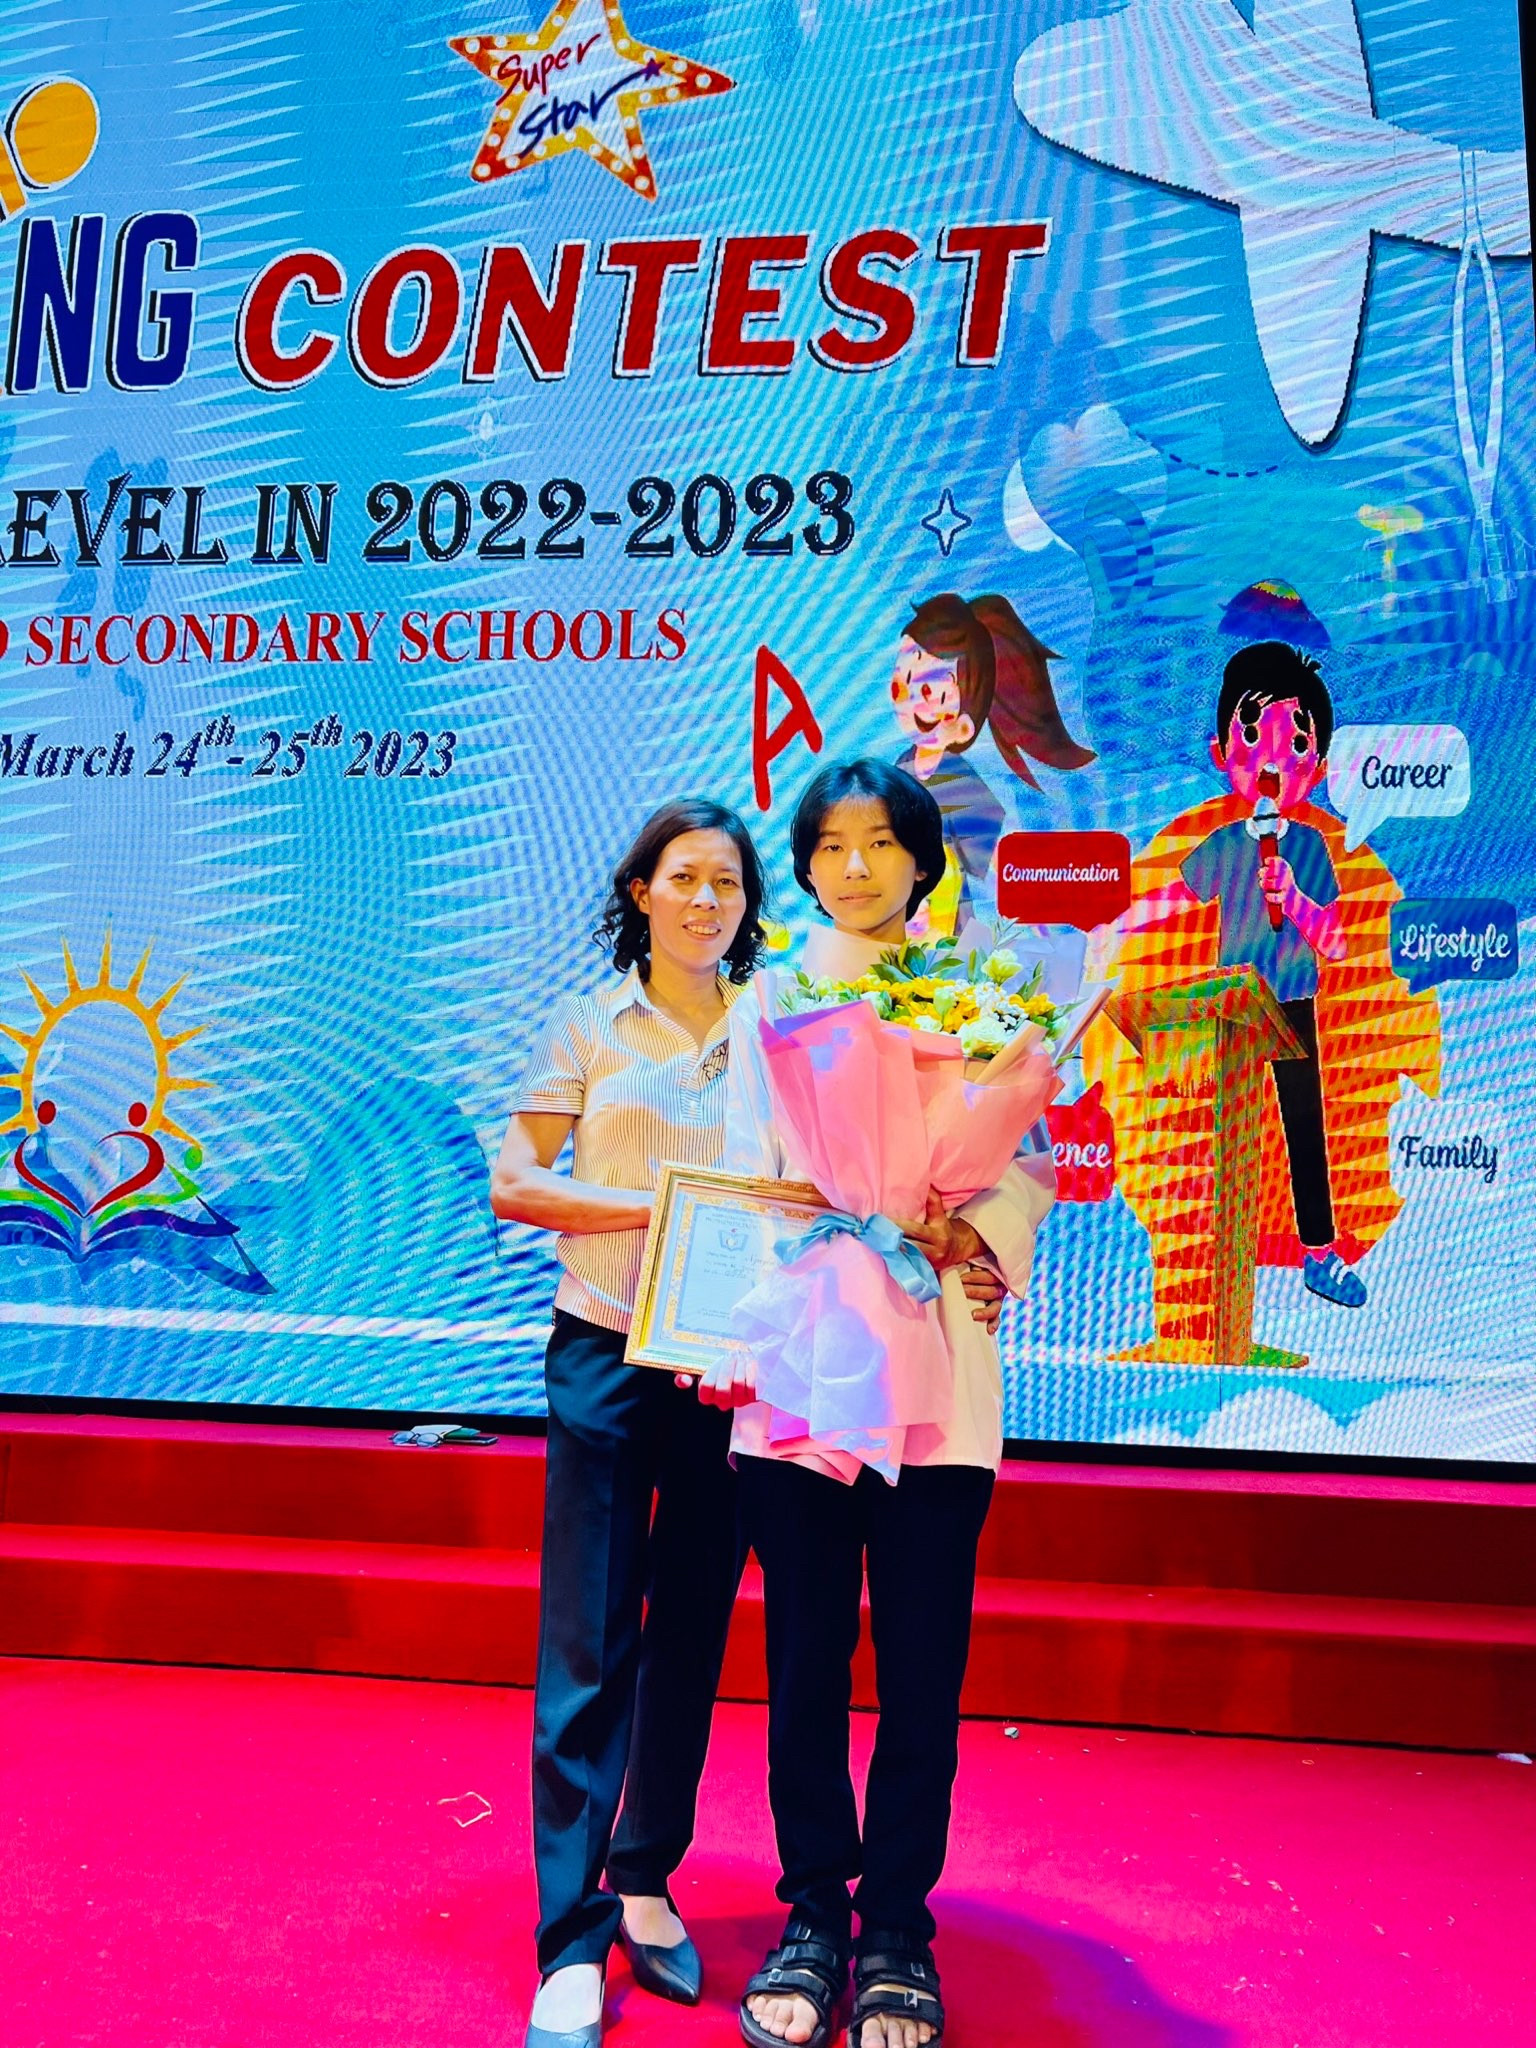 Chúc mừng Minh Giang đạt giải nhì cuộc thi Hùng biện toàn TP Từ Sơn